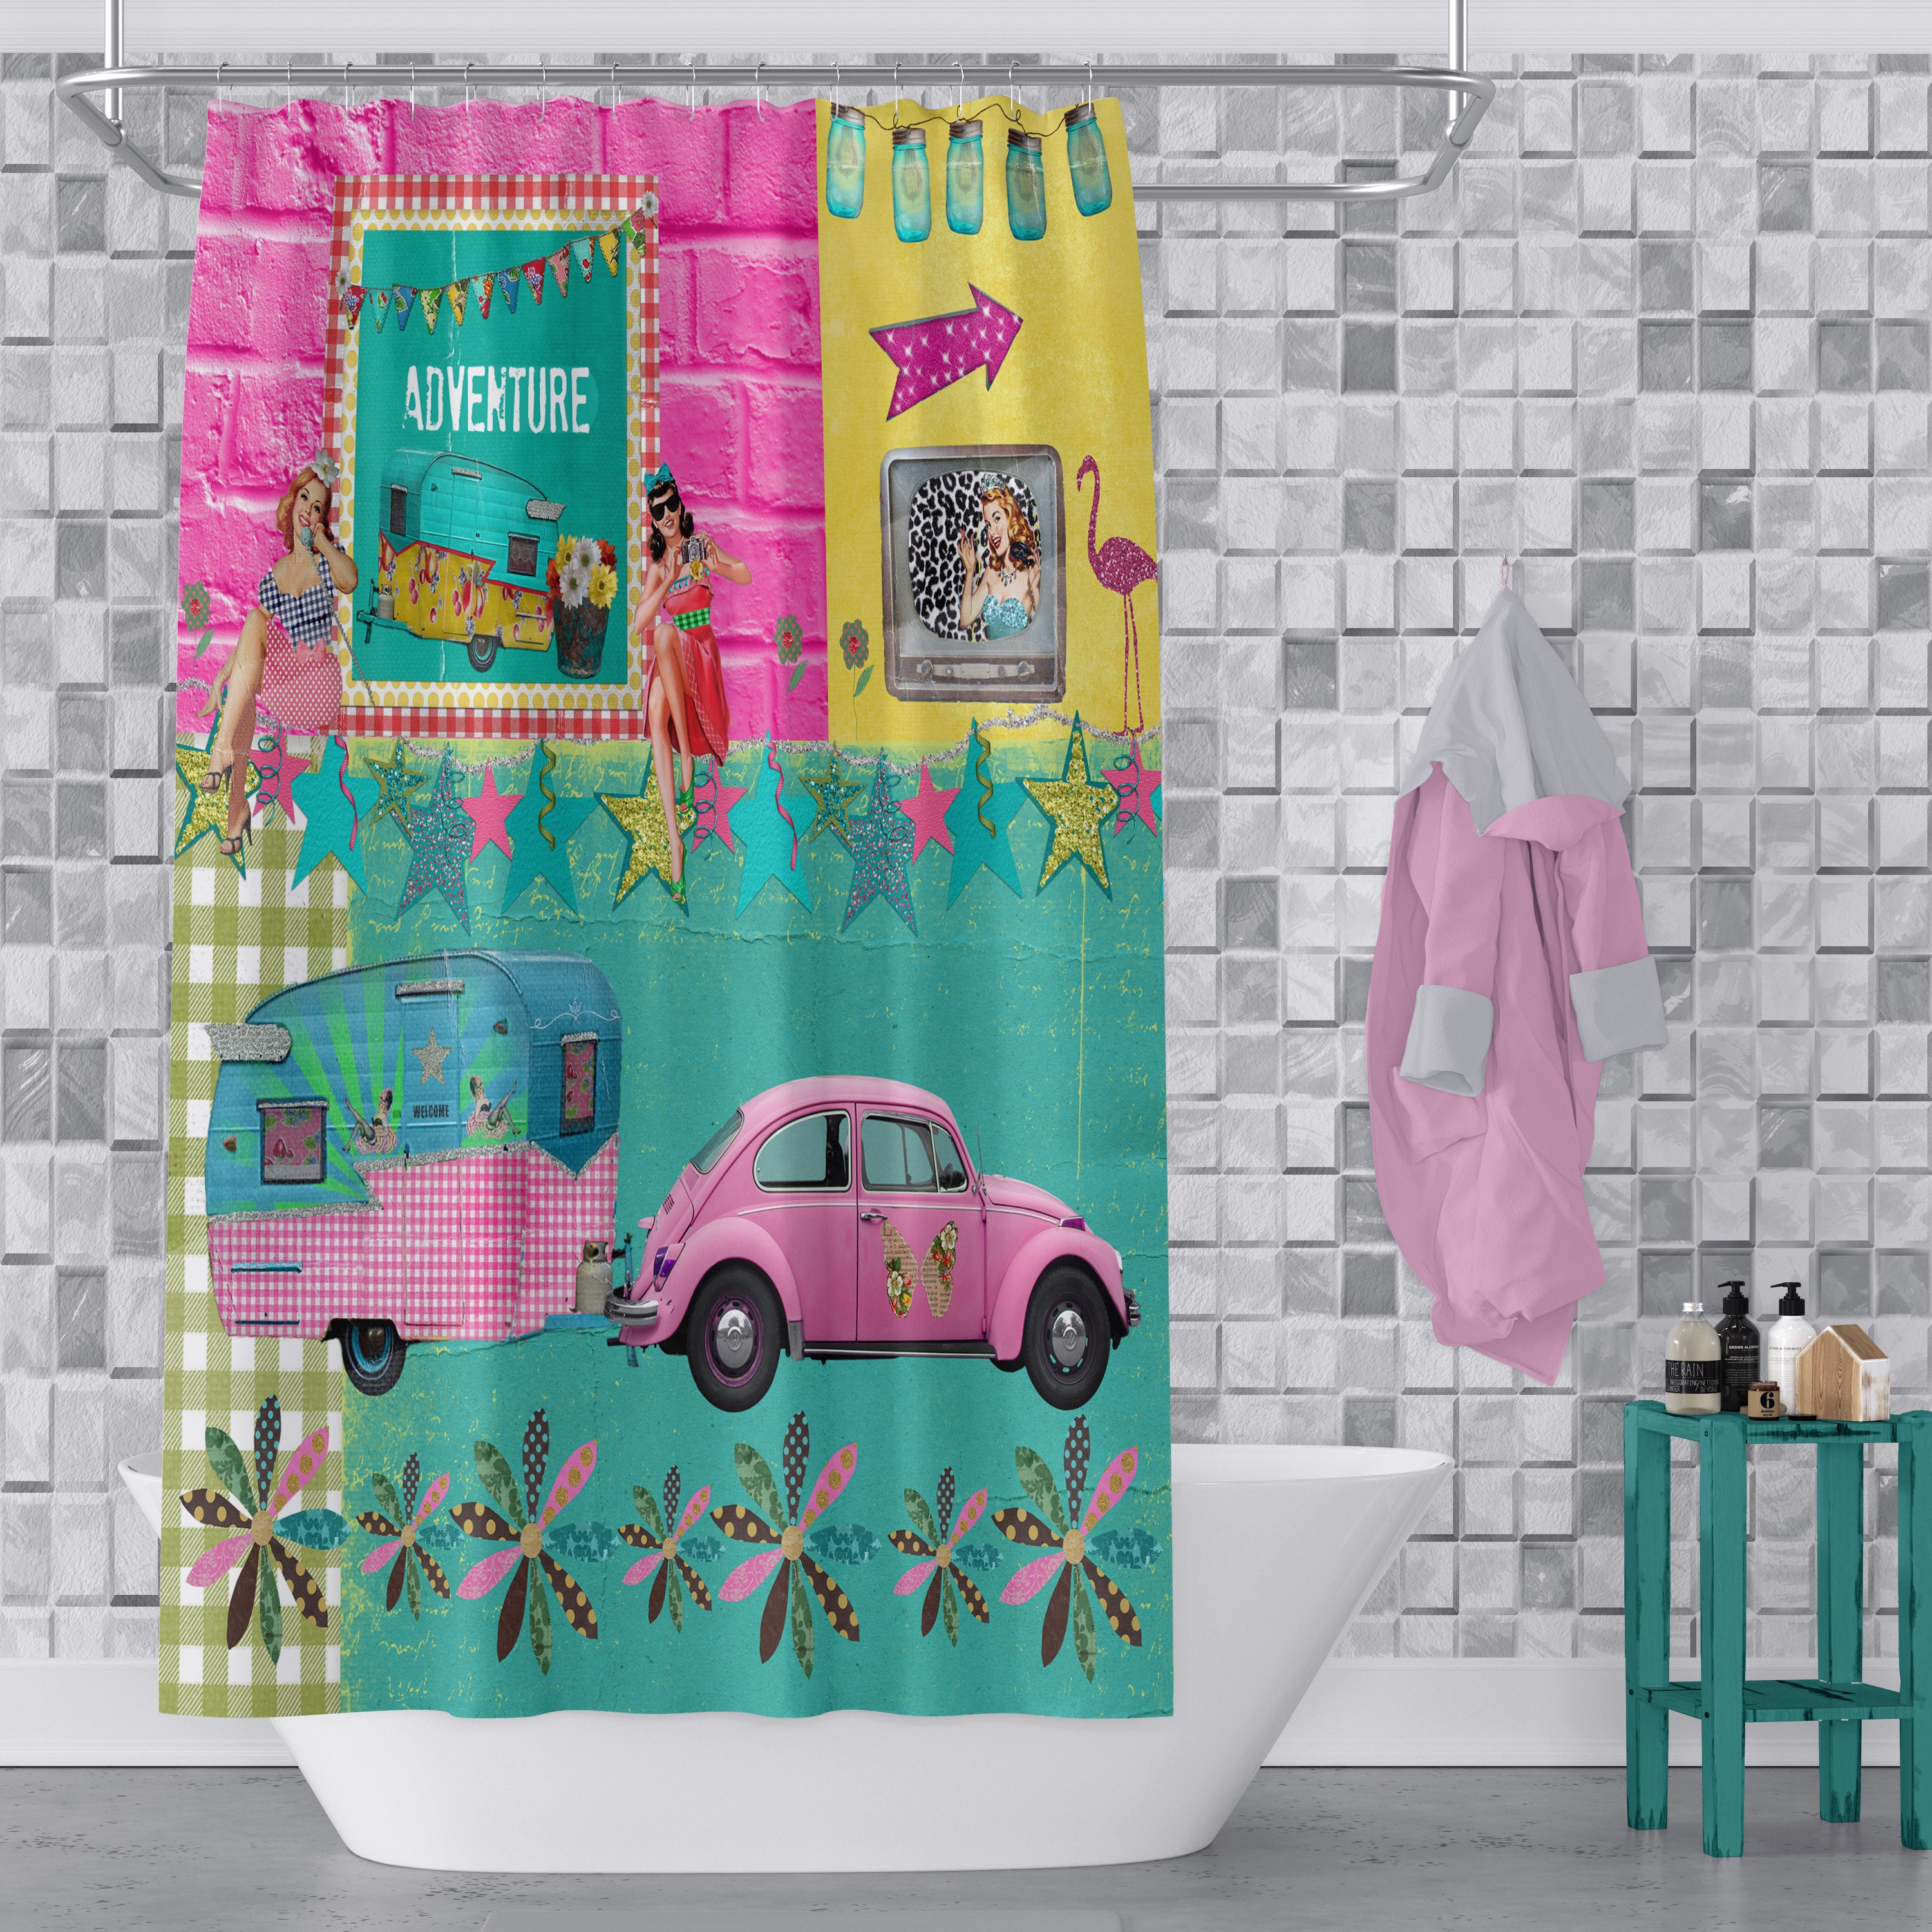 Retro Shower Curtain Vintage Camper Bathroom Decor Folk N Funky